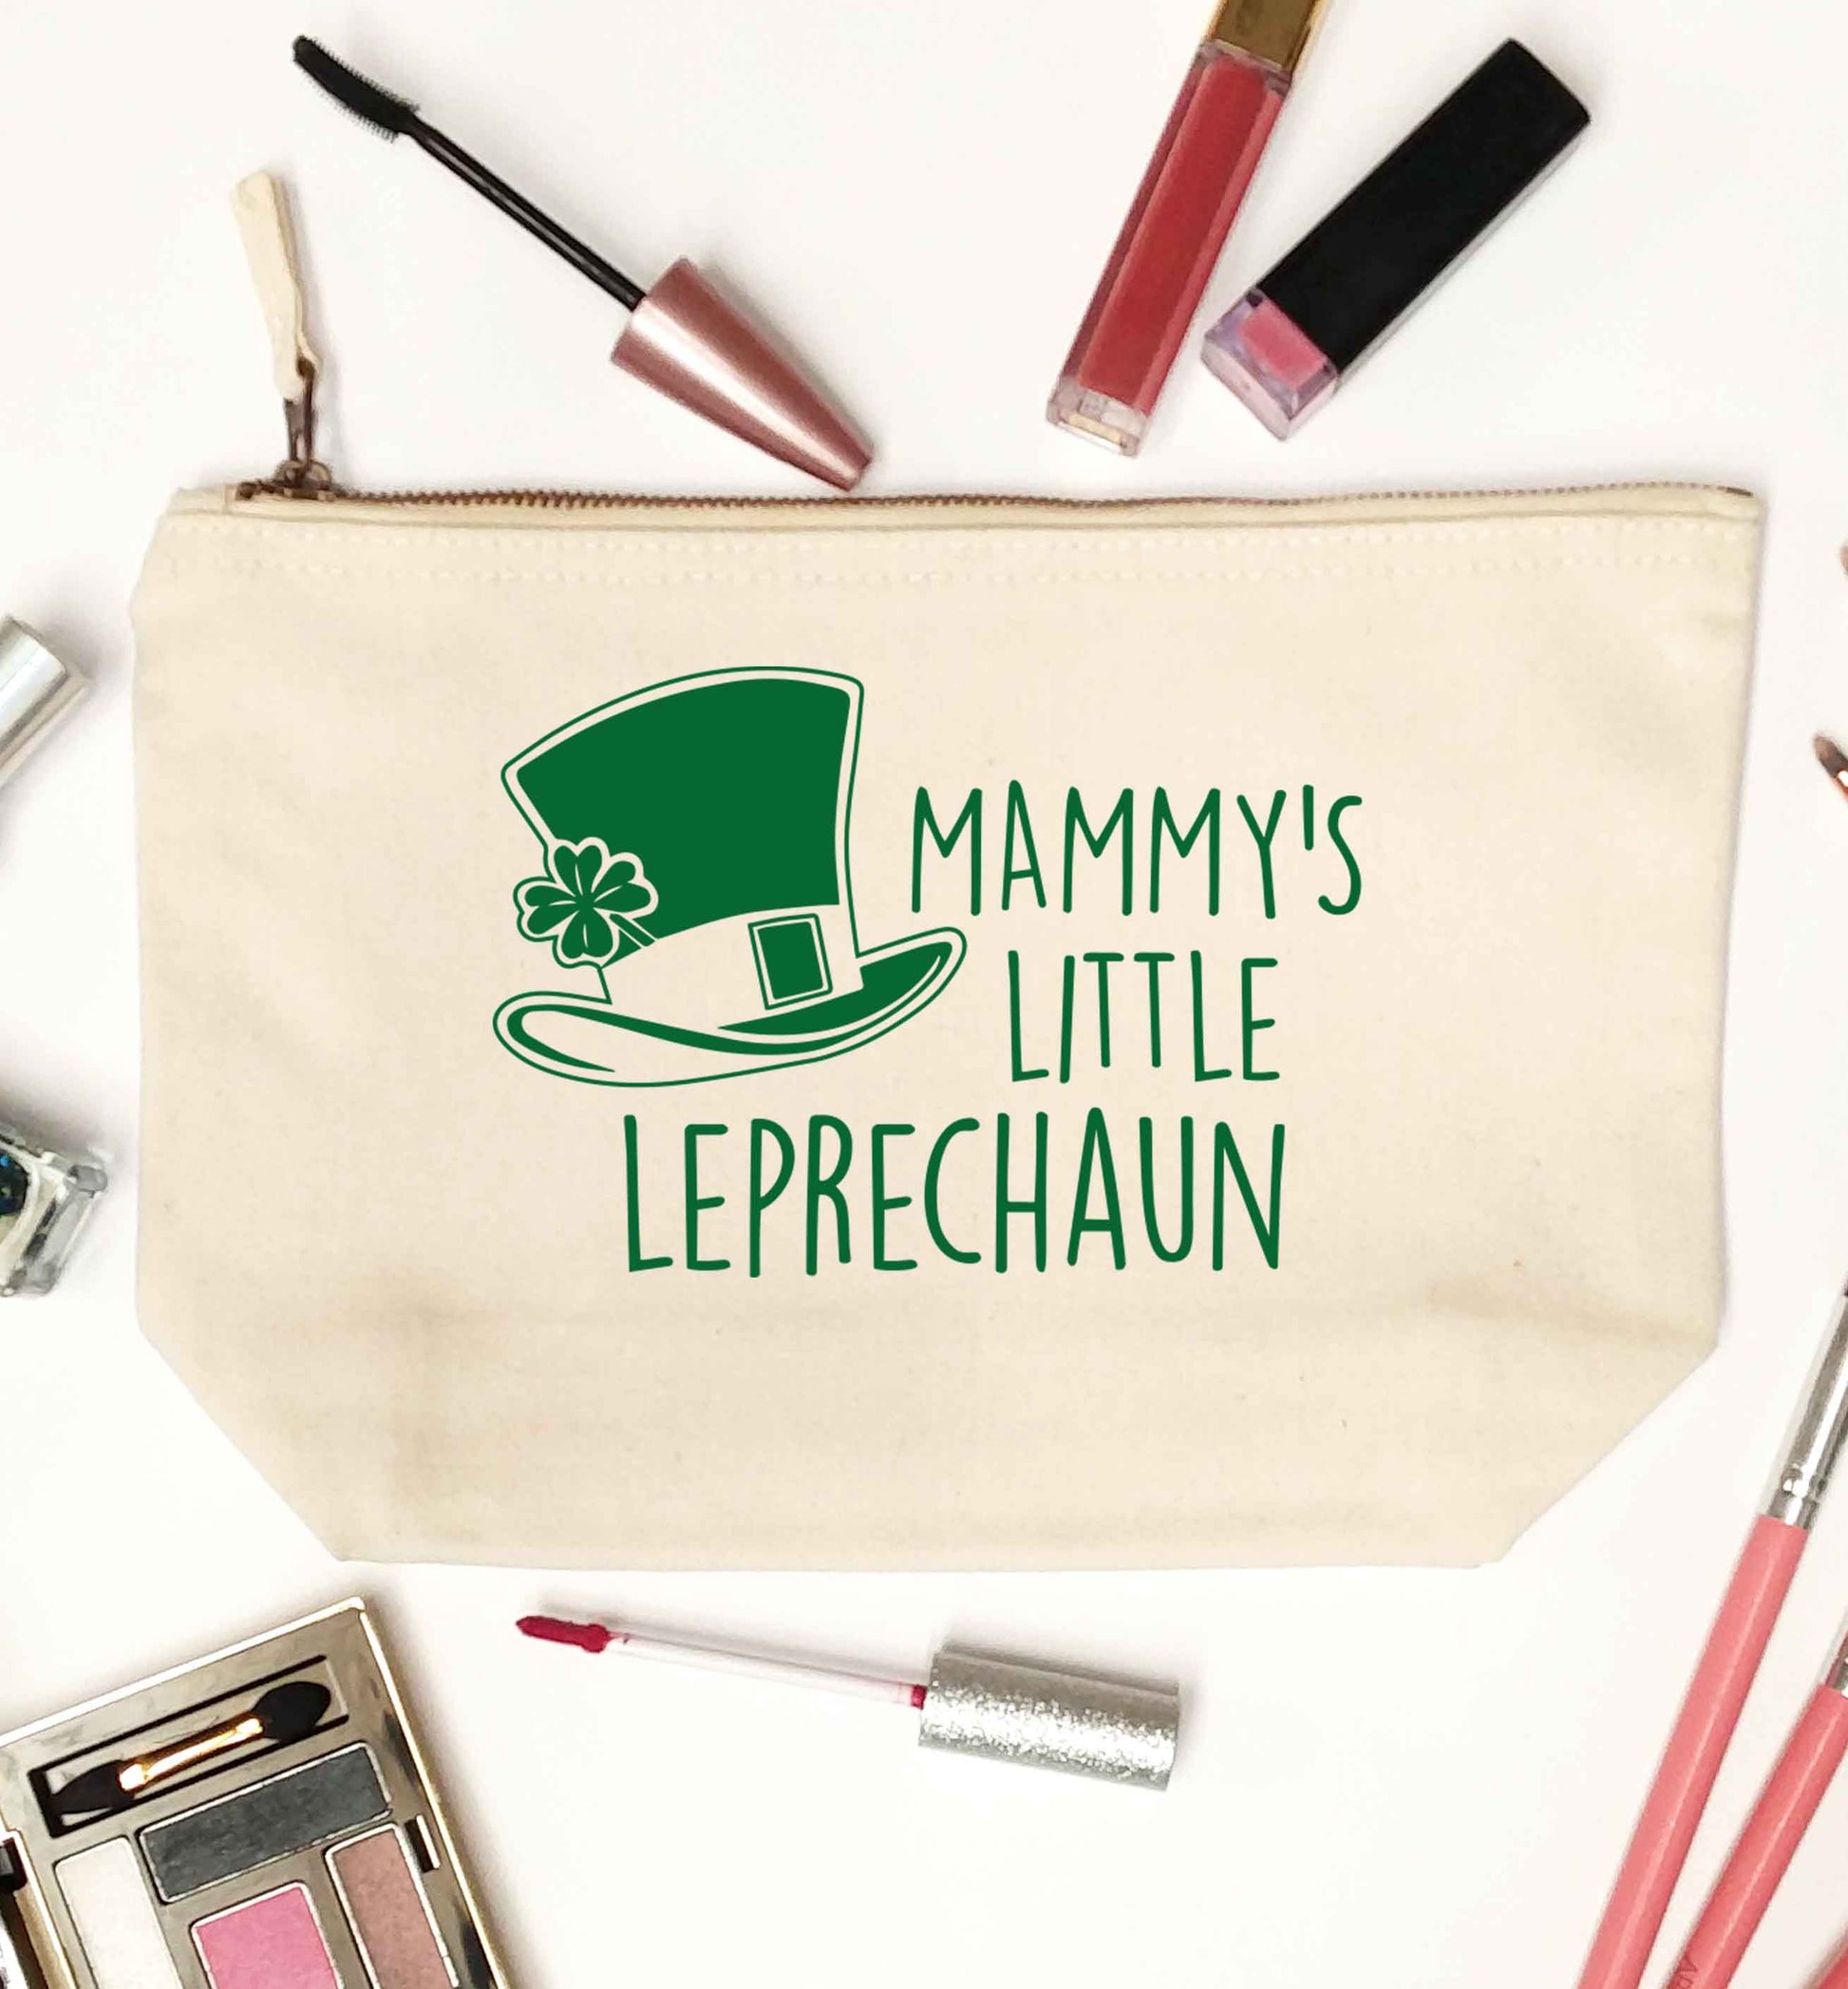 Mammy's little leprechaun natural makeup bag